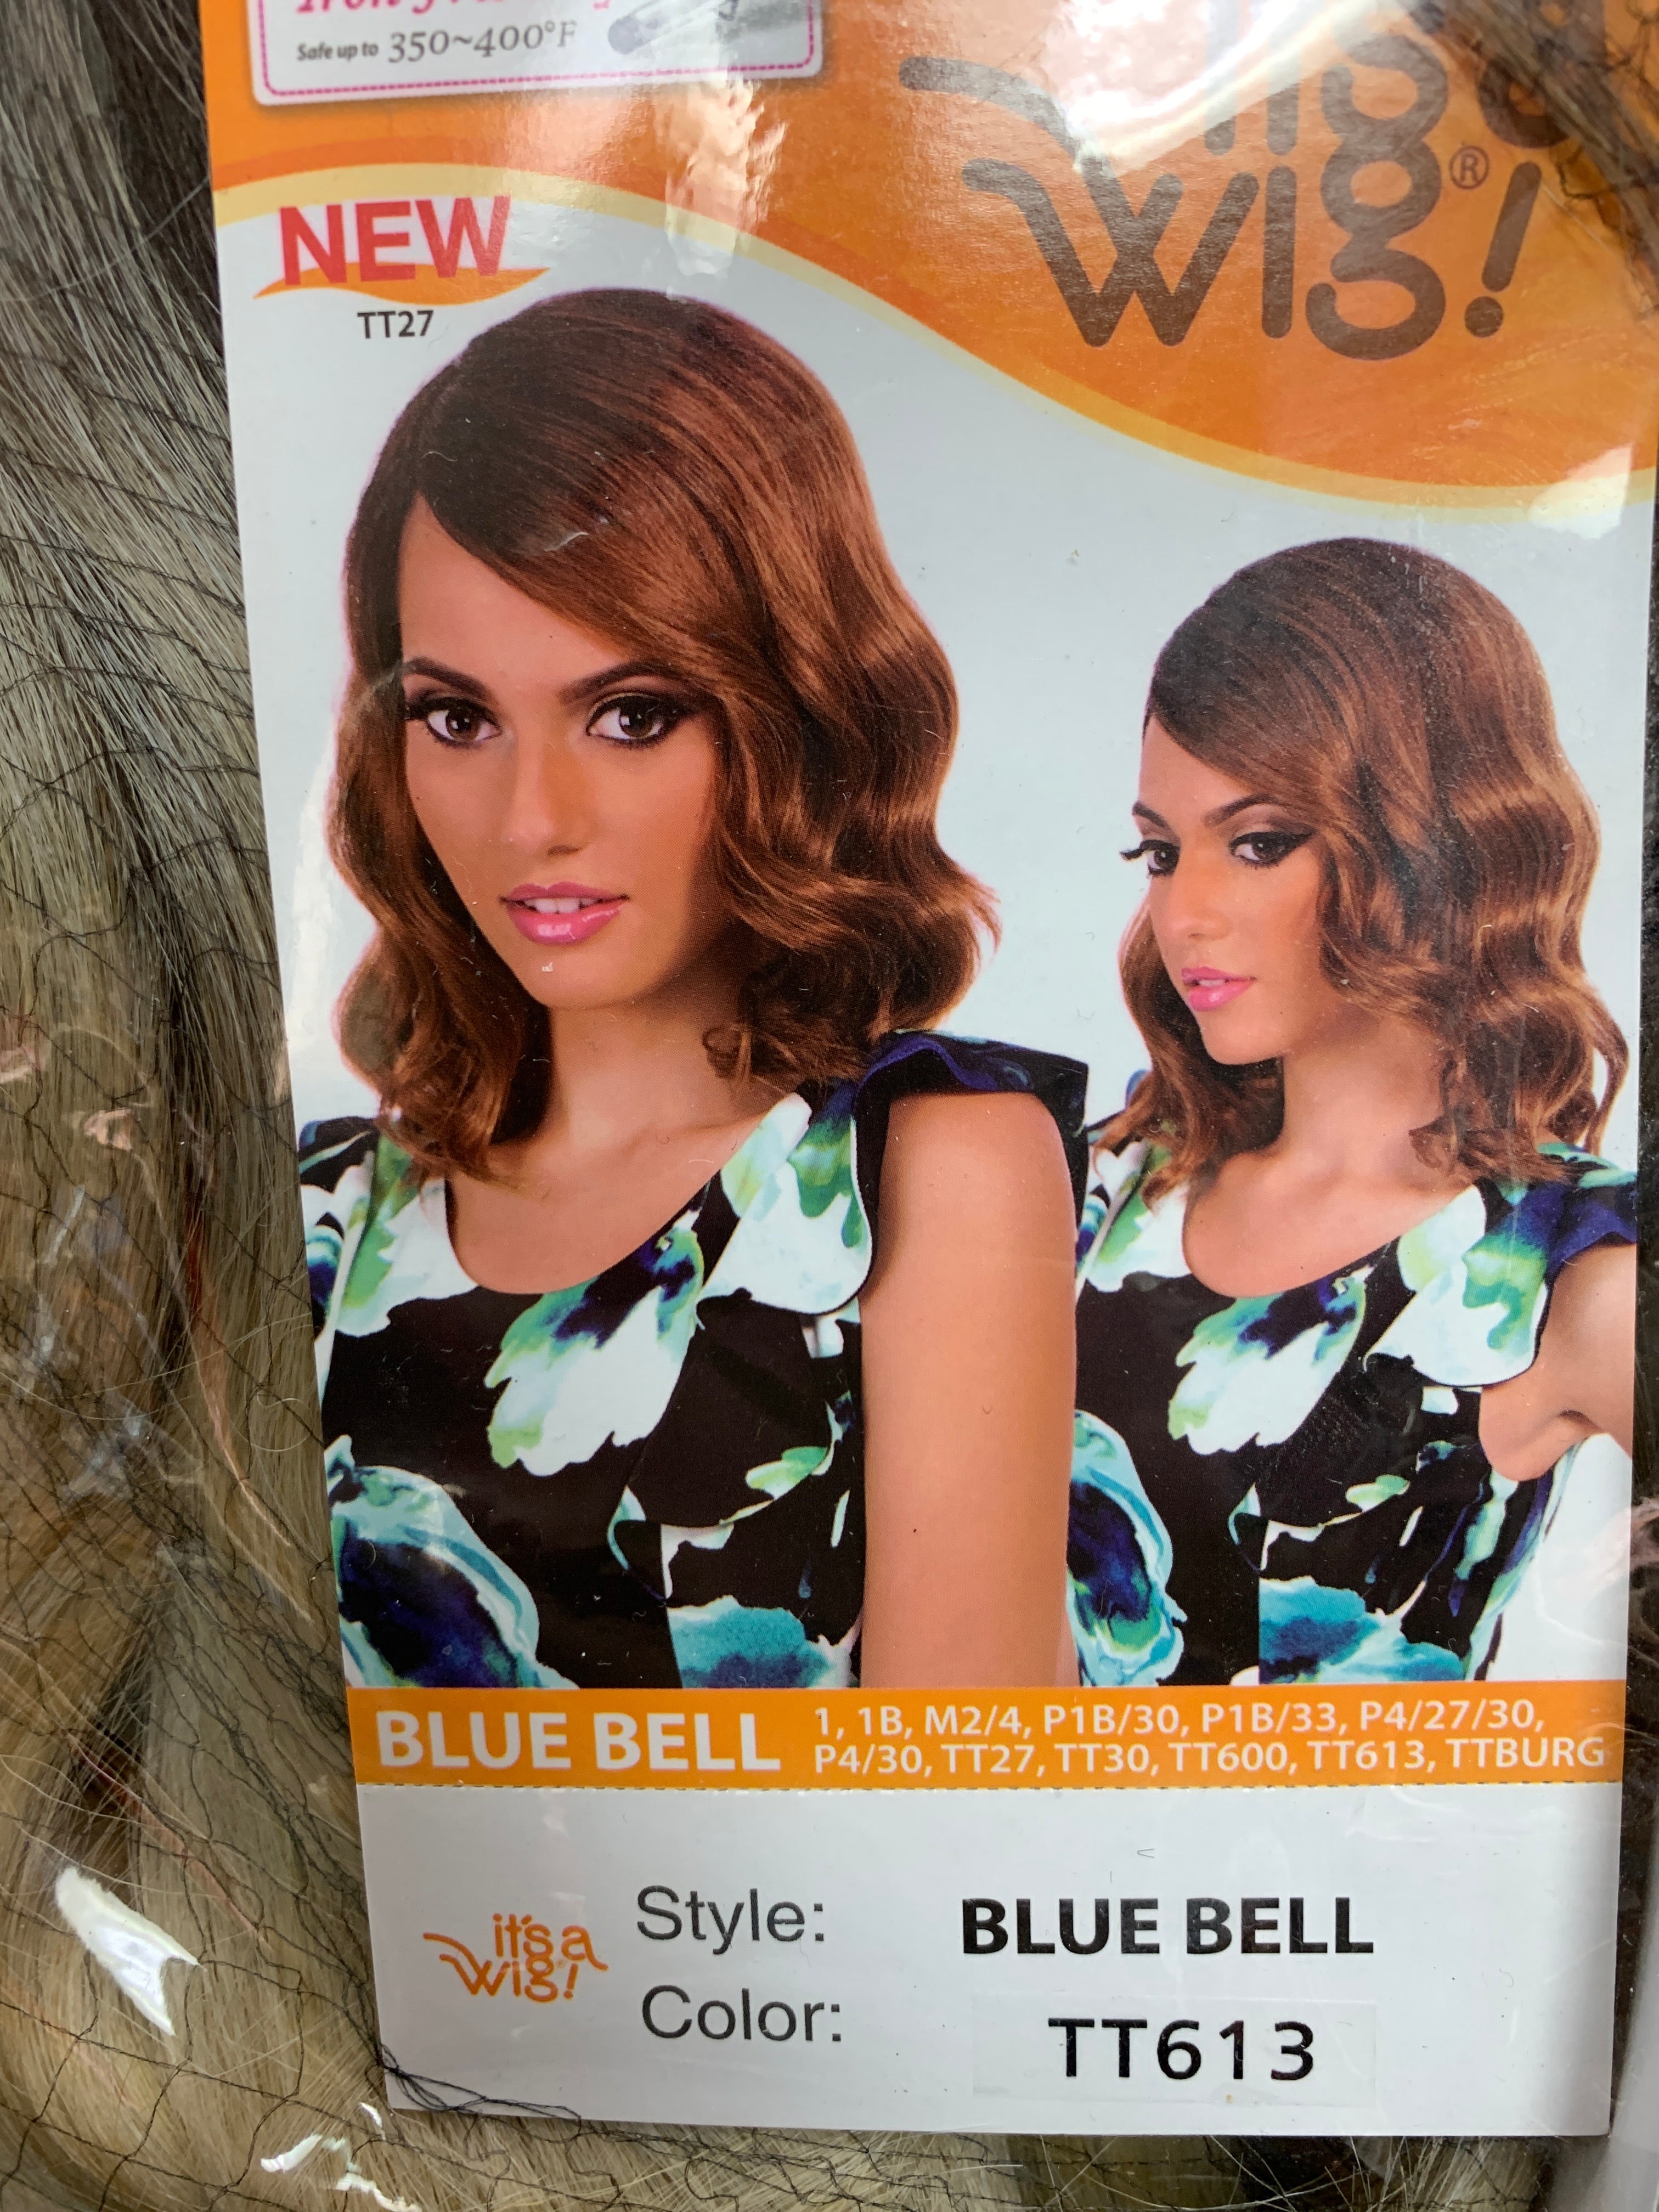 It’s a wig Blue bell